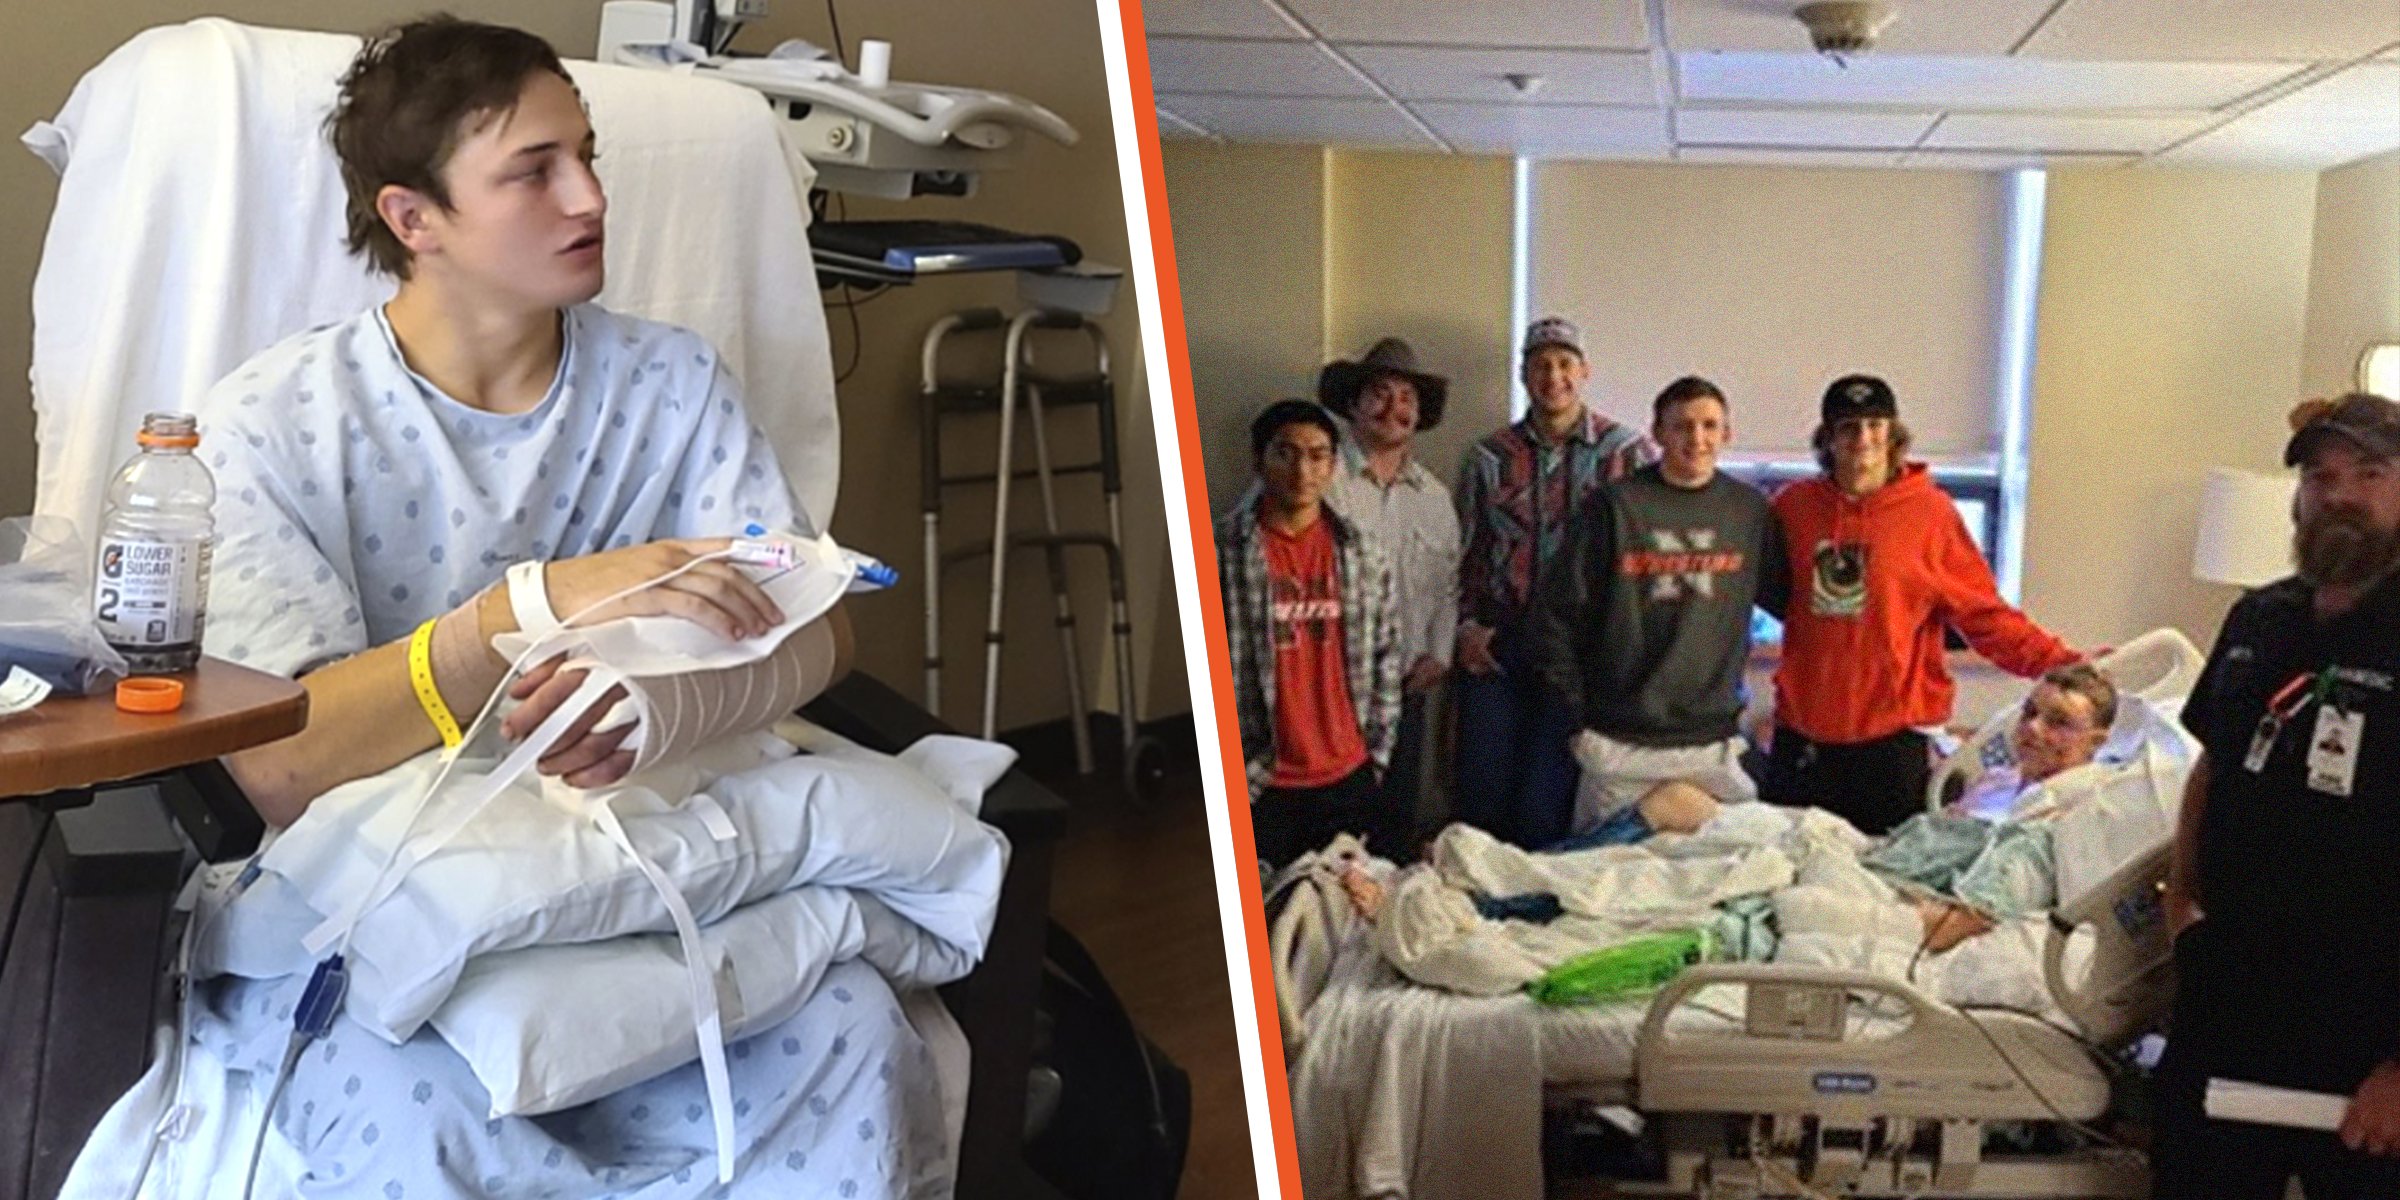 Brady Lowry | Kendell Cummings à l'hôpital avec les membres de son équipe de lutte | Source : twitter.com/KSLSharaPark